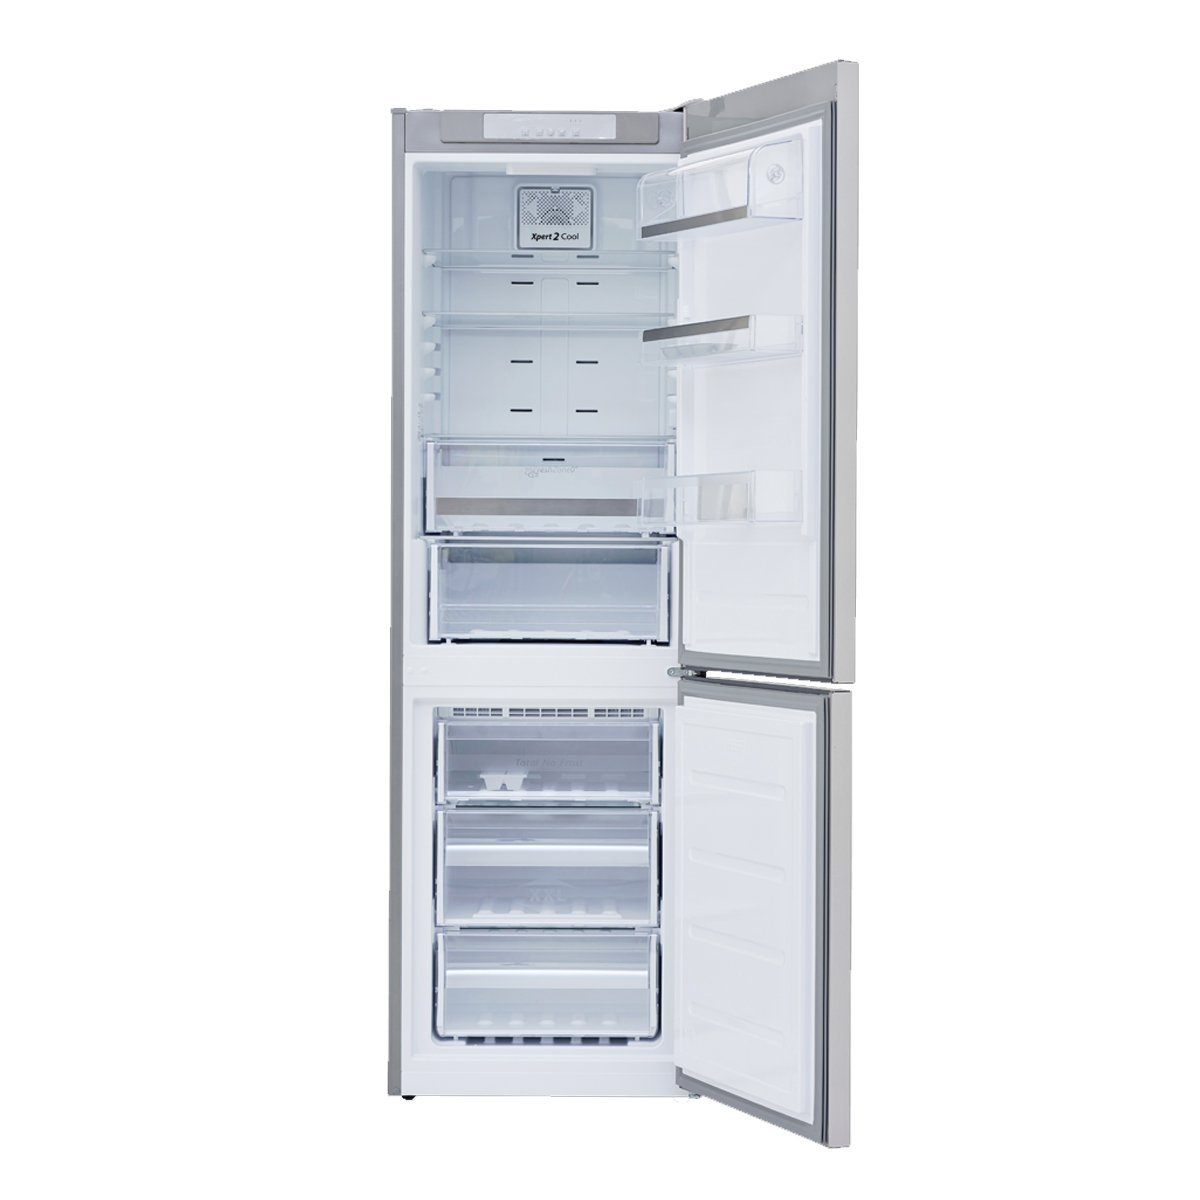 Refrigerador Whirlpool Button 11P Wrb311Dmbm Acero